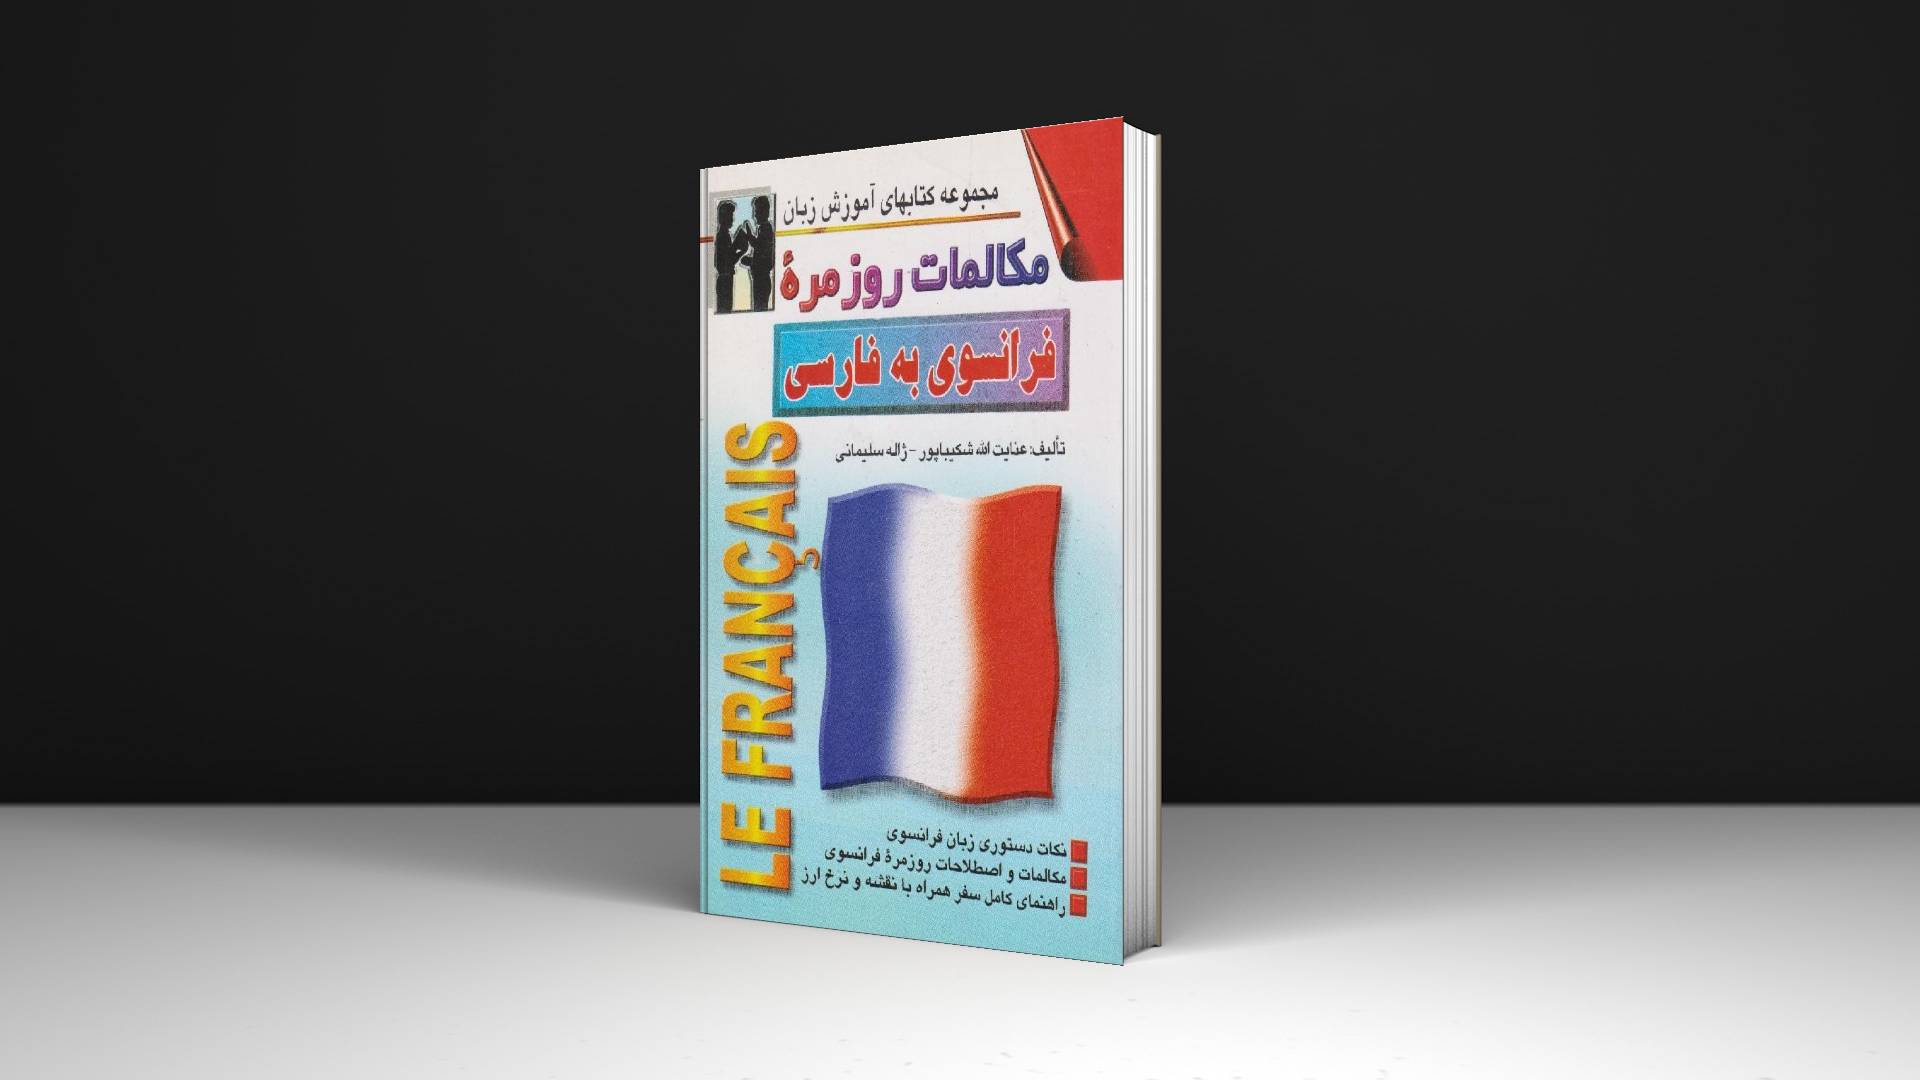 خرید کتاب زبان | زبان استور | کتاب خودآموز زبان فرانسوی | کتاب مکالمات روزمره فرانسوی به فارسی